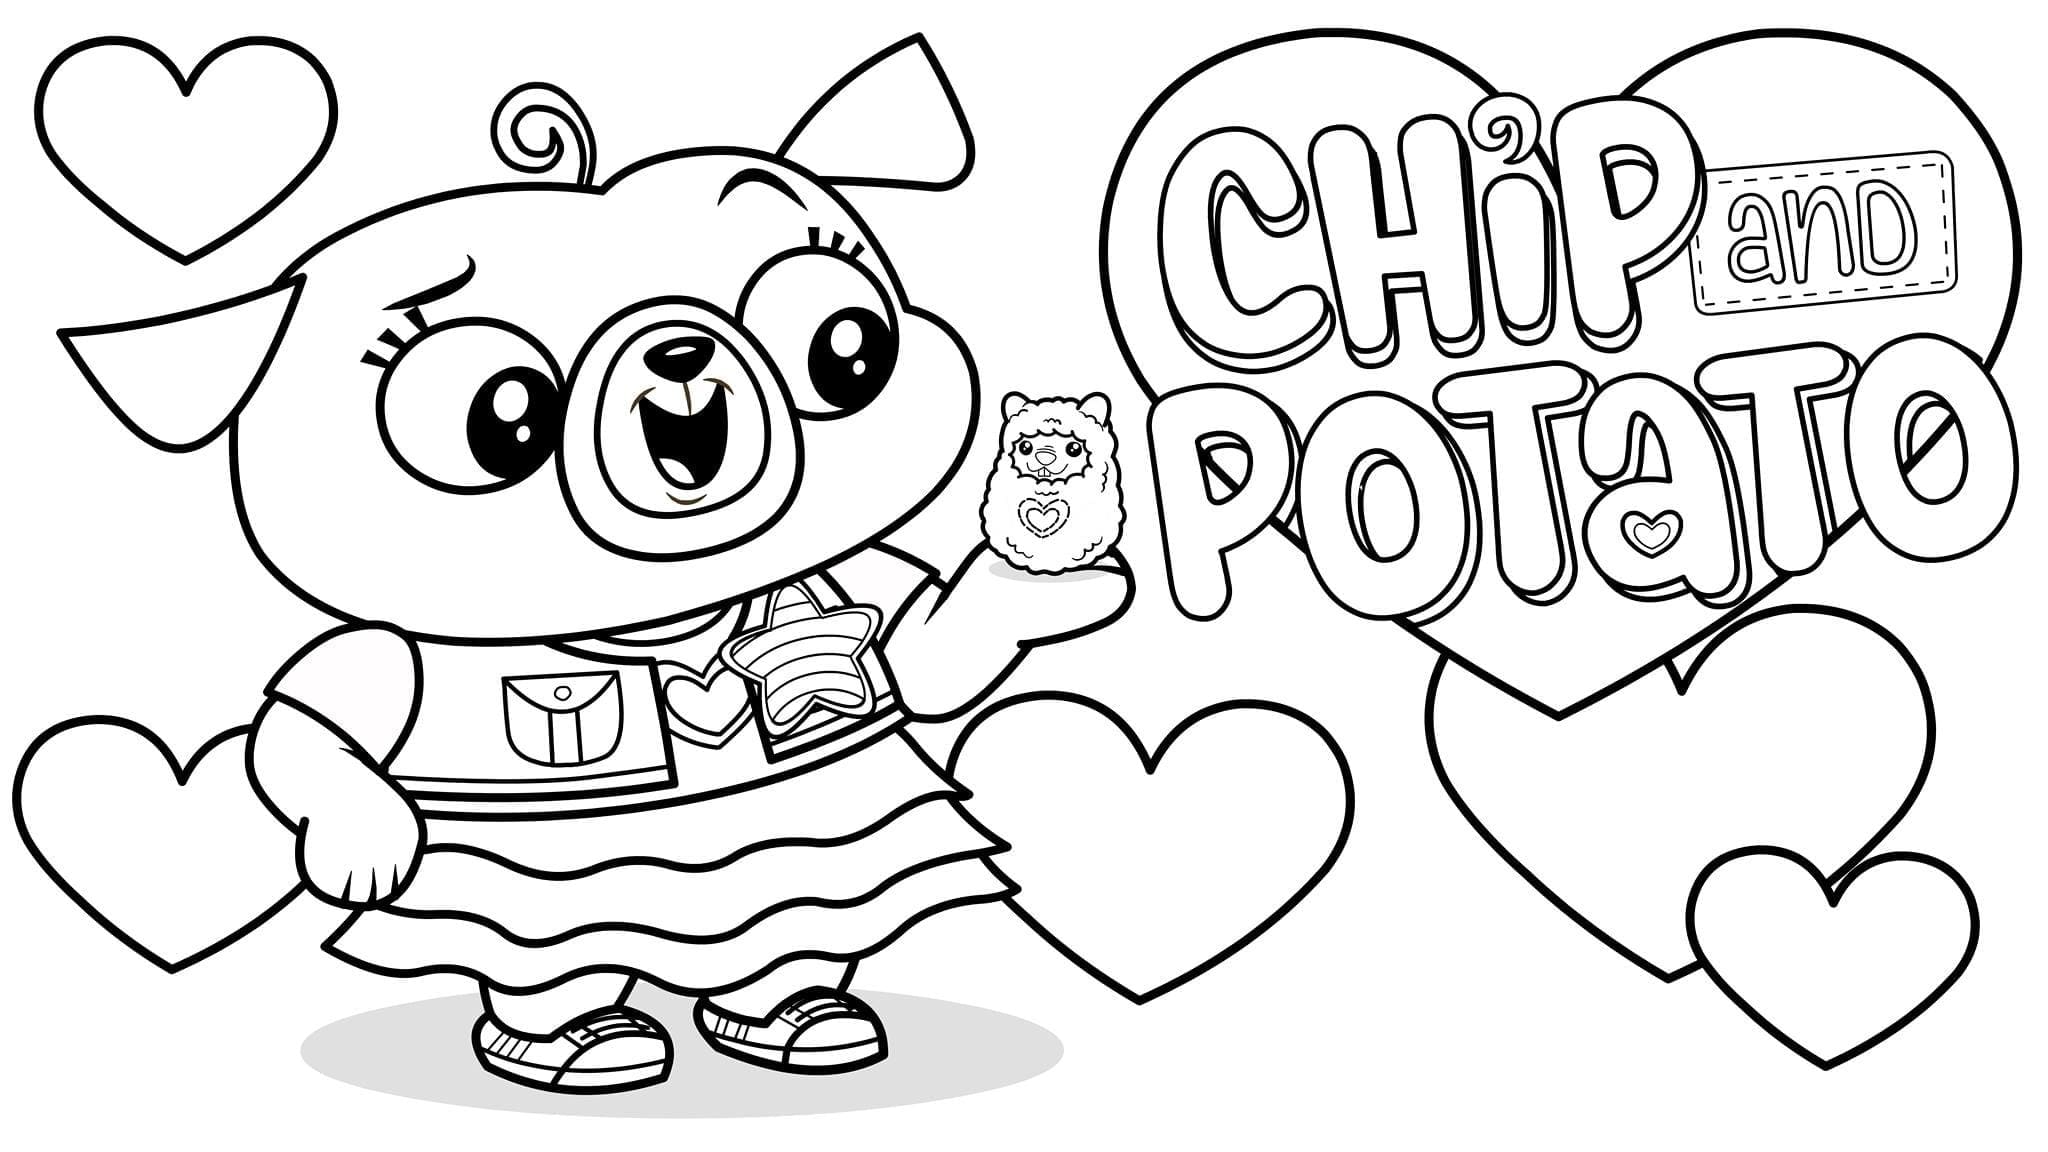 Dibujos de Chip y Potato para Colorear - 50 imágenes gratis para imprimir